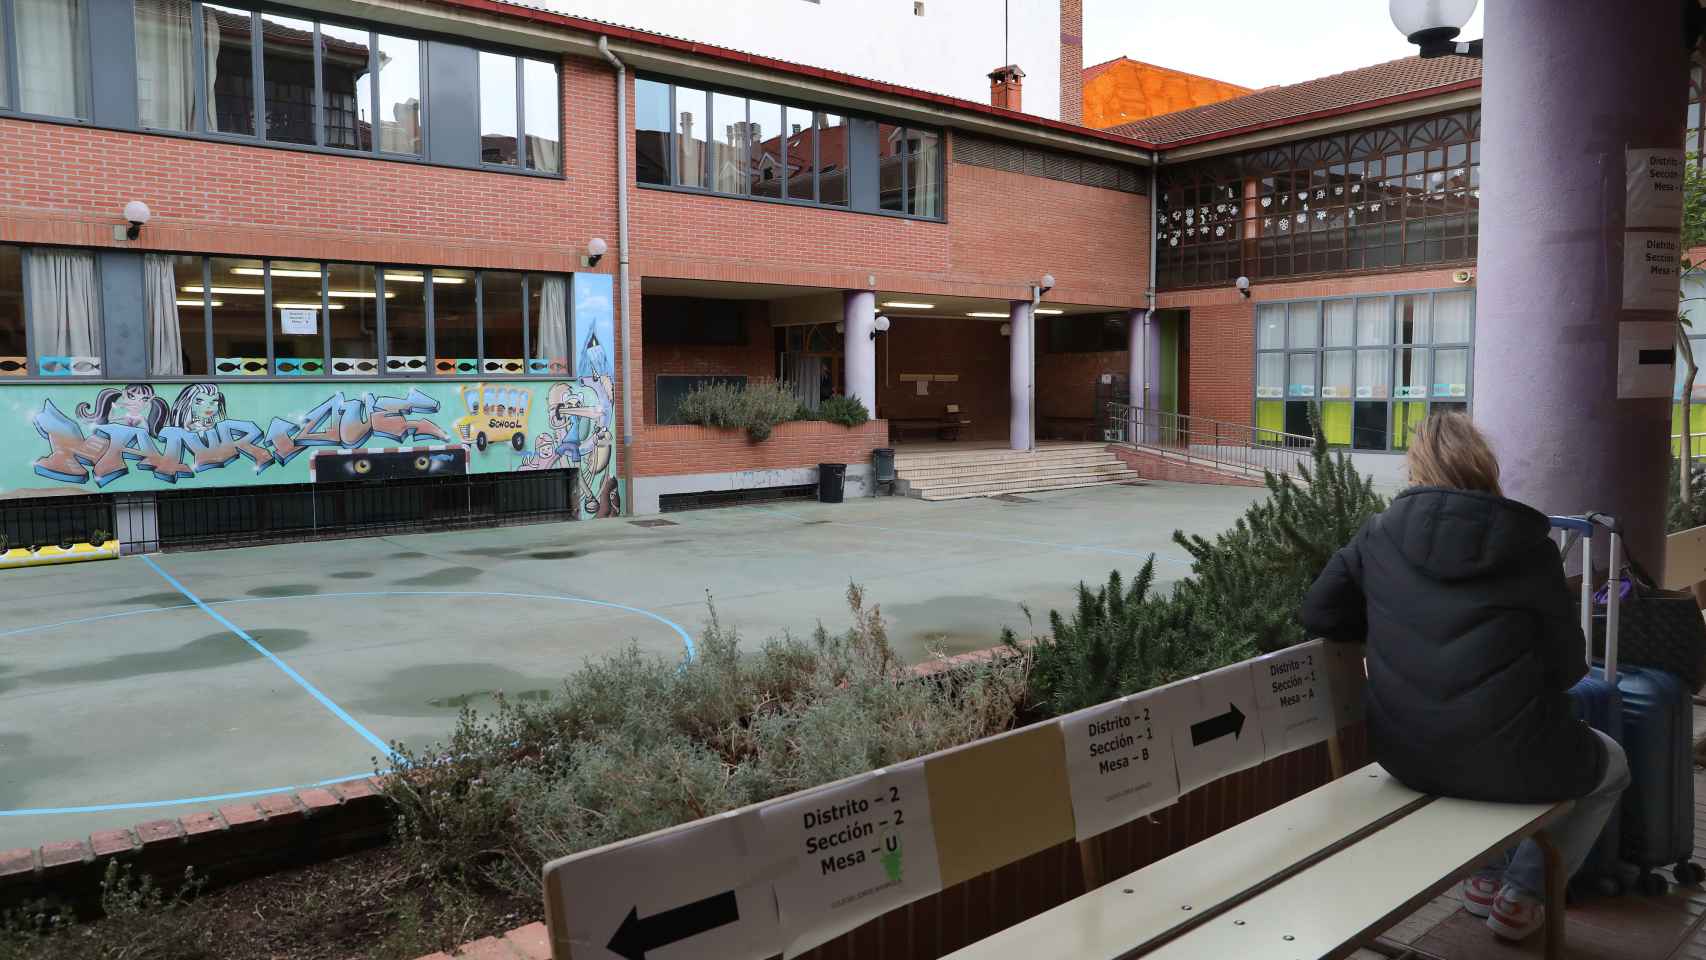 Elecciones municpales en Palencia, colegio electoral en el CEIP Jorge Manrique